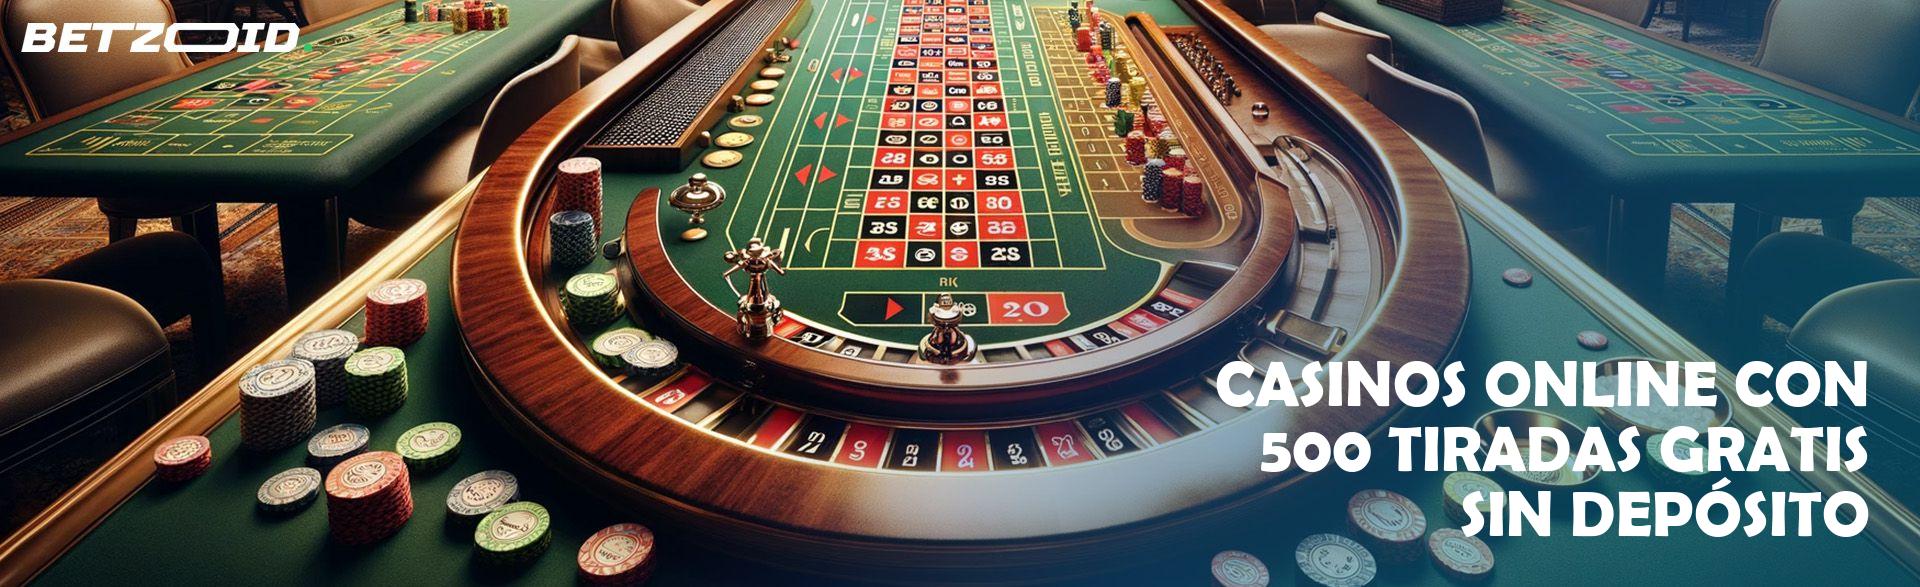 Casinos Online con 500 Tiradas Gratis sin Depósito.